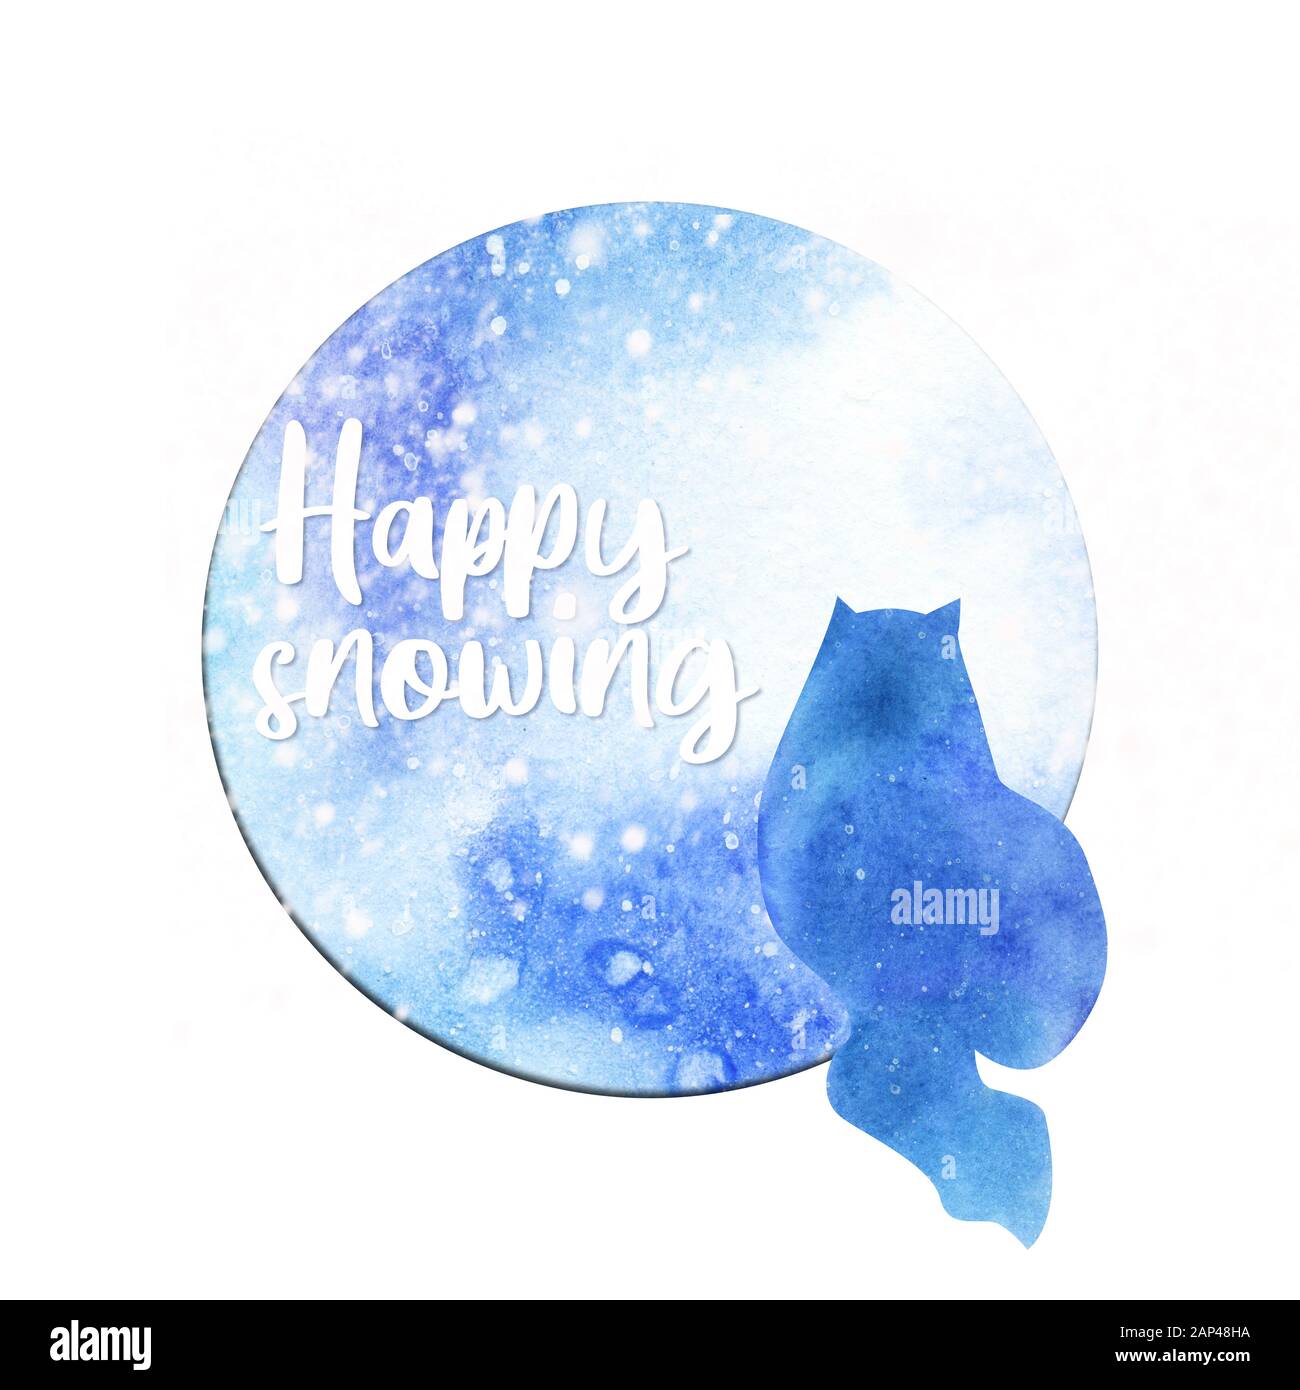 Silhouette des Wasserfarbensitzens und Blick auf die Schneekatze und das runde Fenster mit "fröhlicher Schnauze"-Text Stockfoto